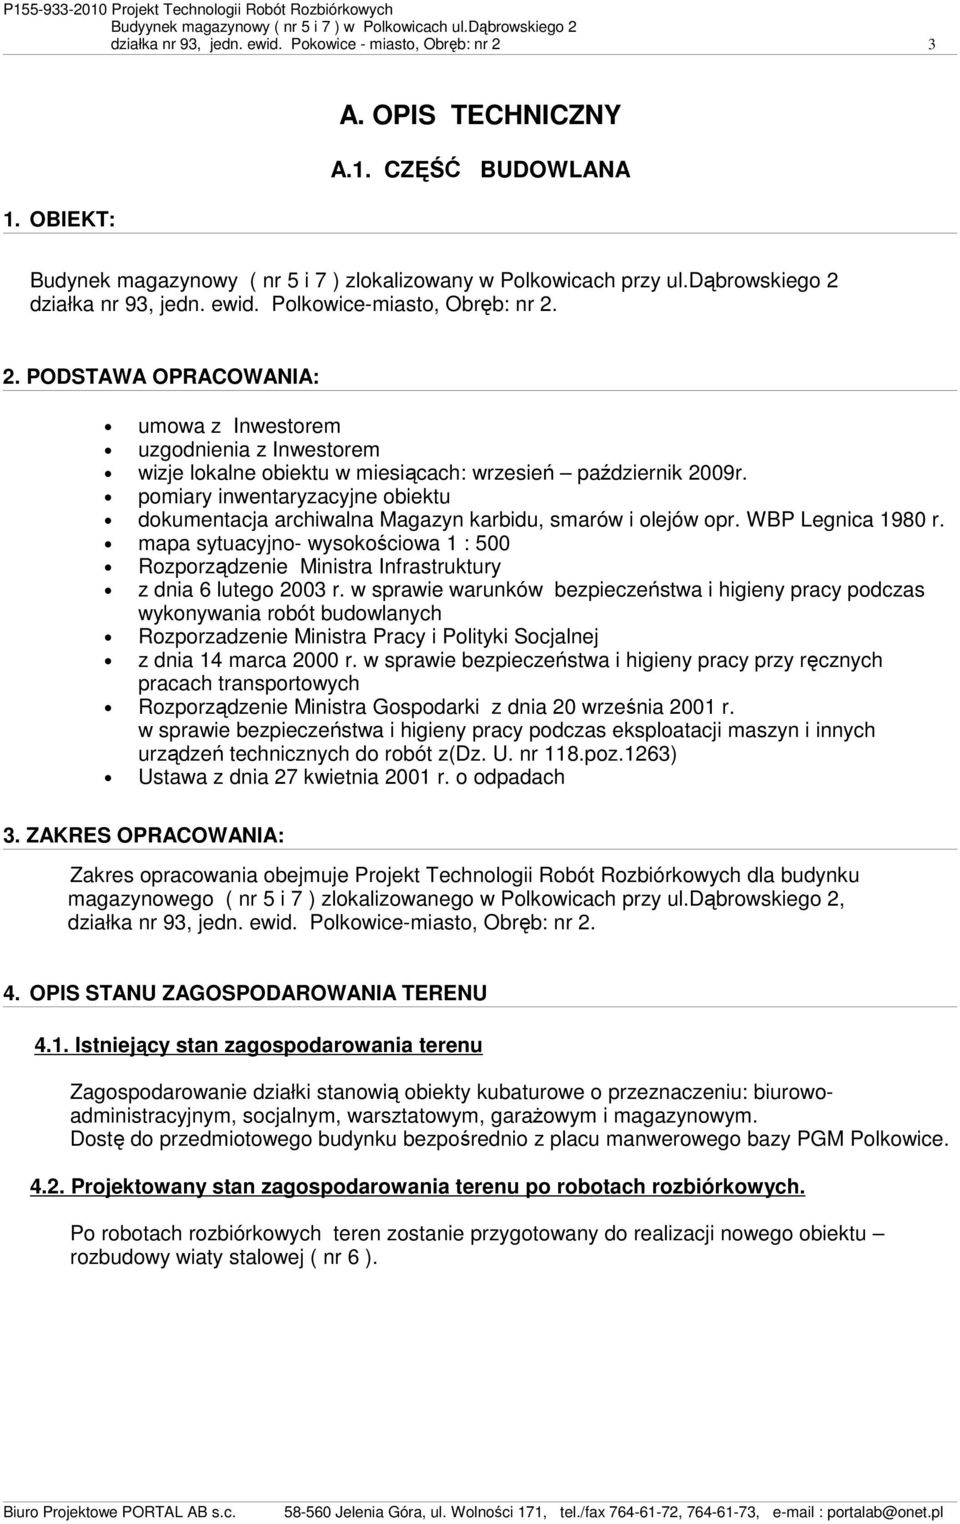 pomiary inwentaryzacyjne obiektu dokumentacja archiwalna Magazyn karbidu, smarów i olejów opr. WBP Legnica 1980 r.